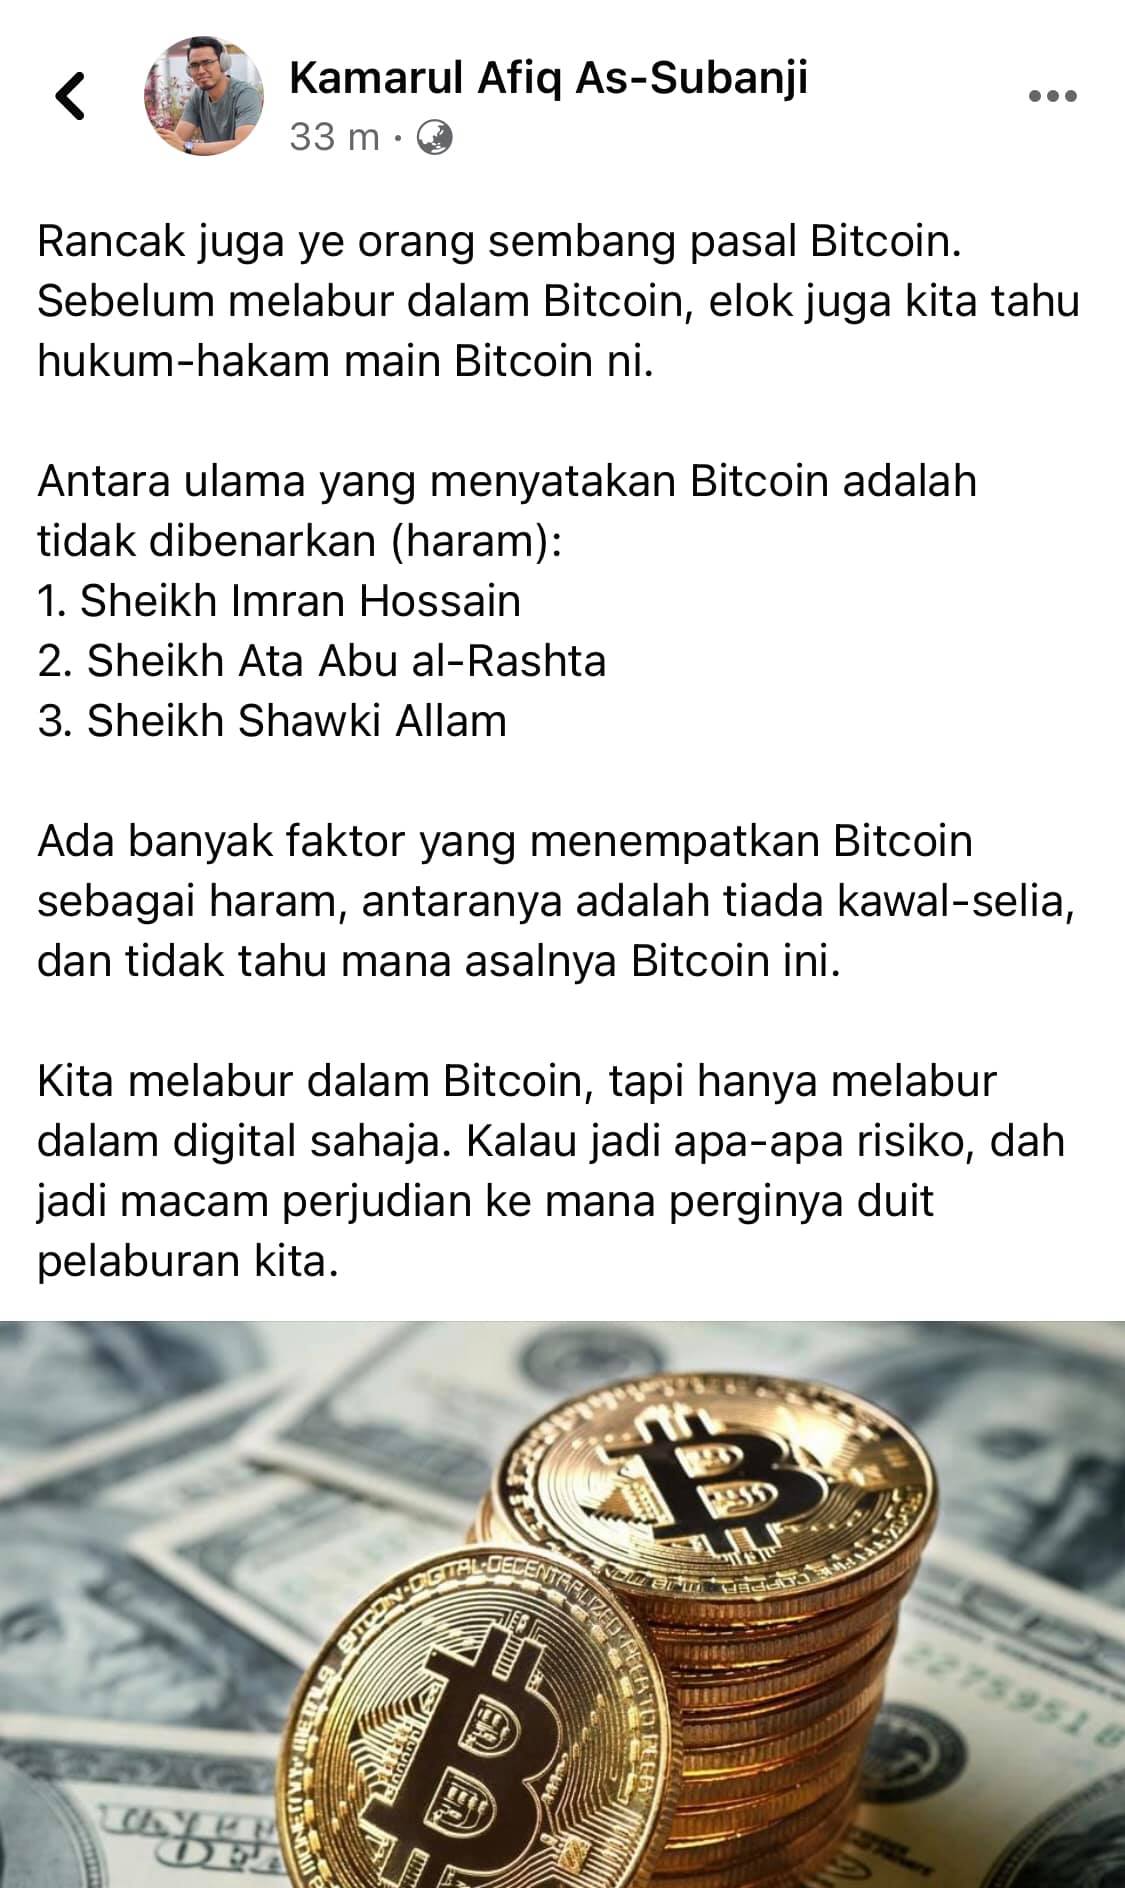 bitcoin haram